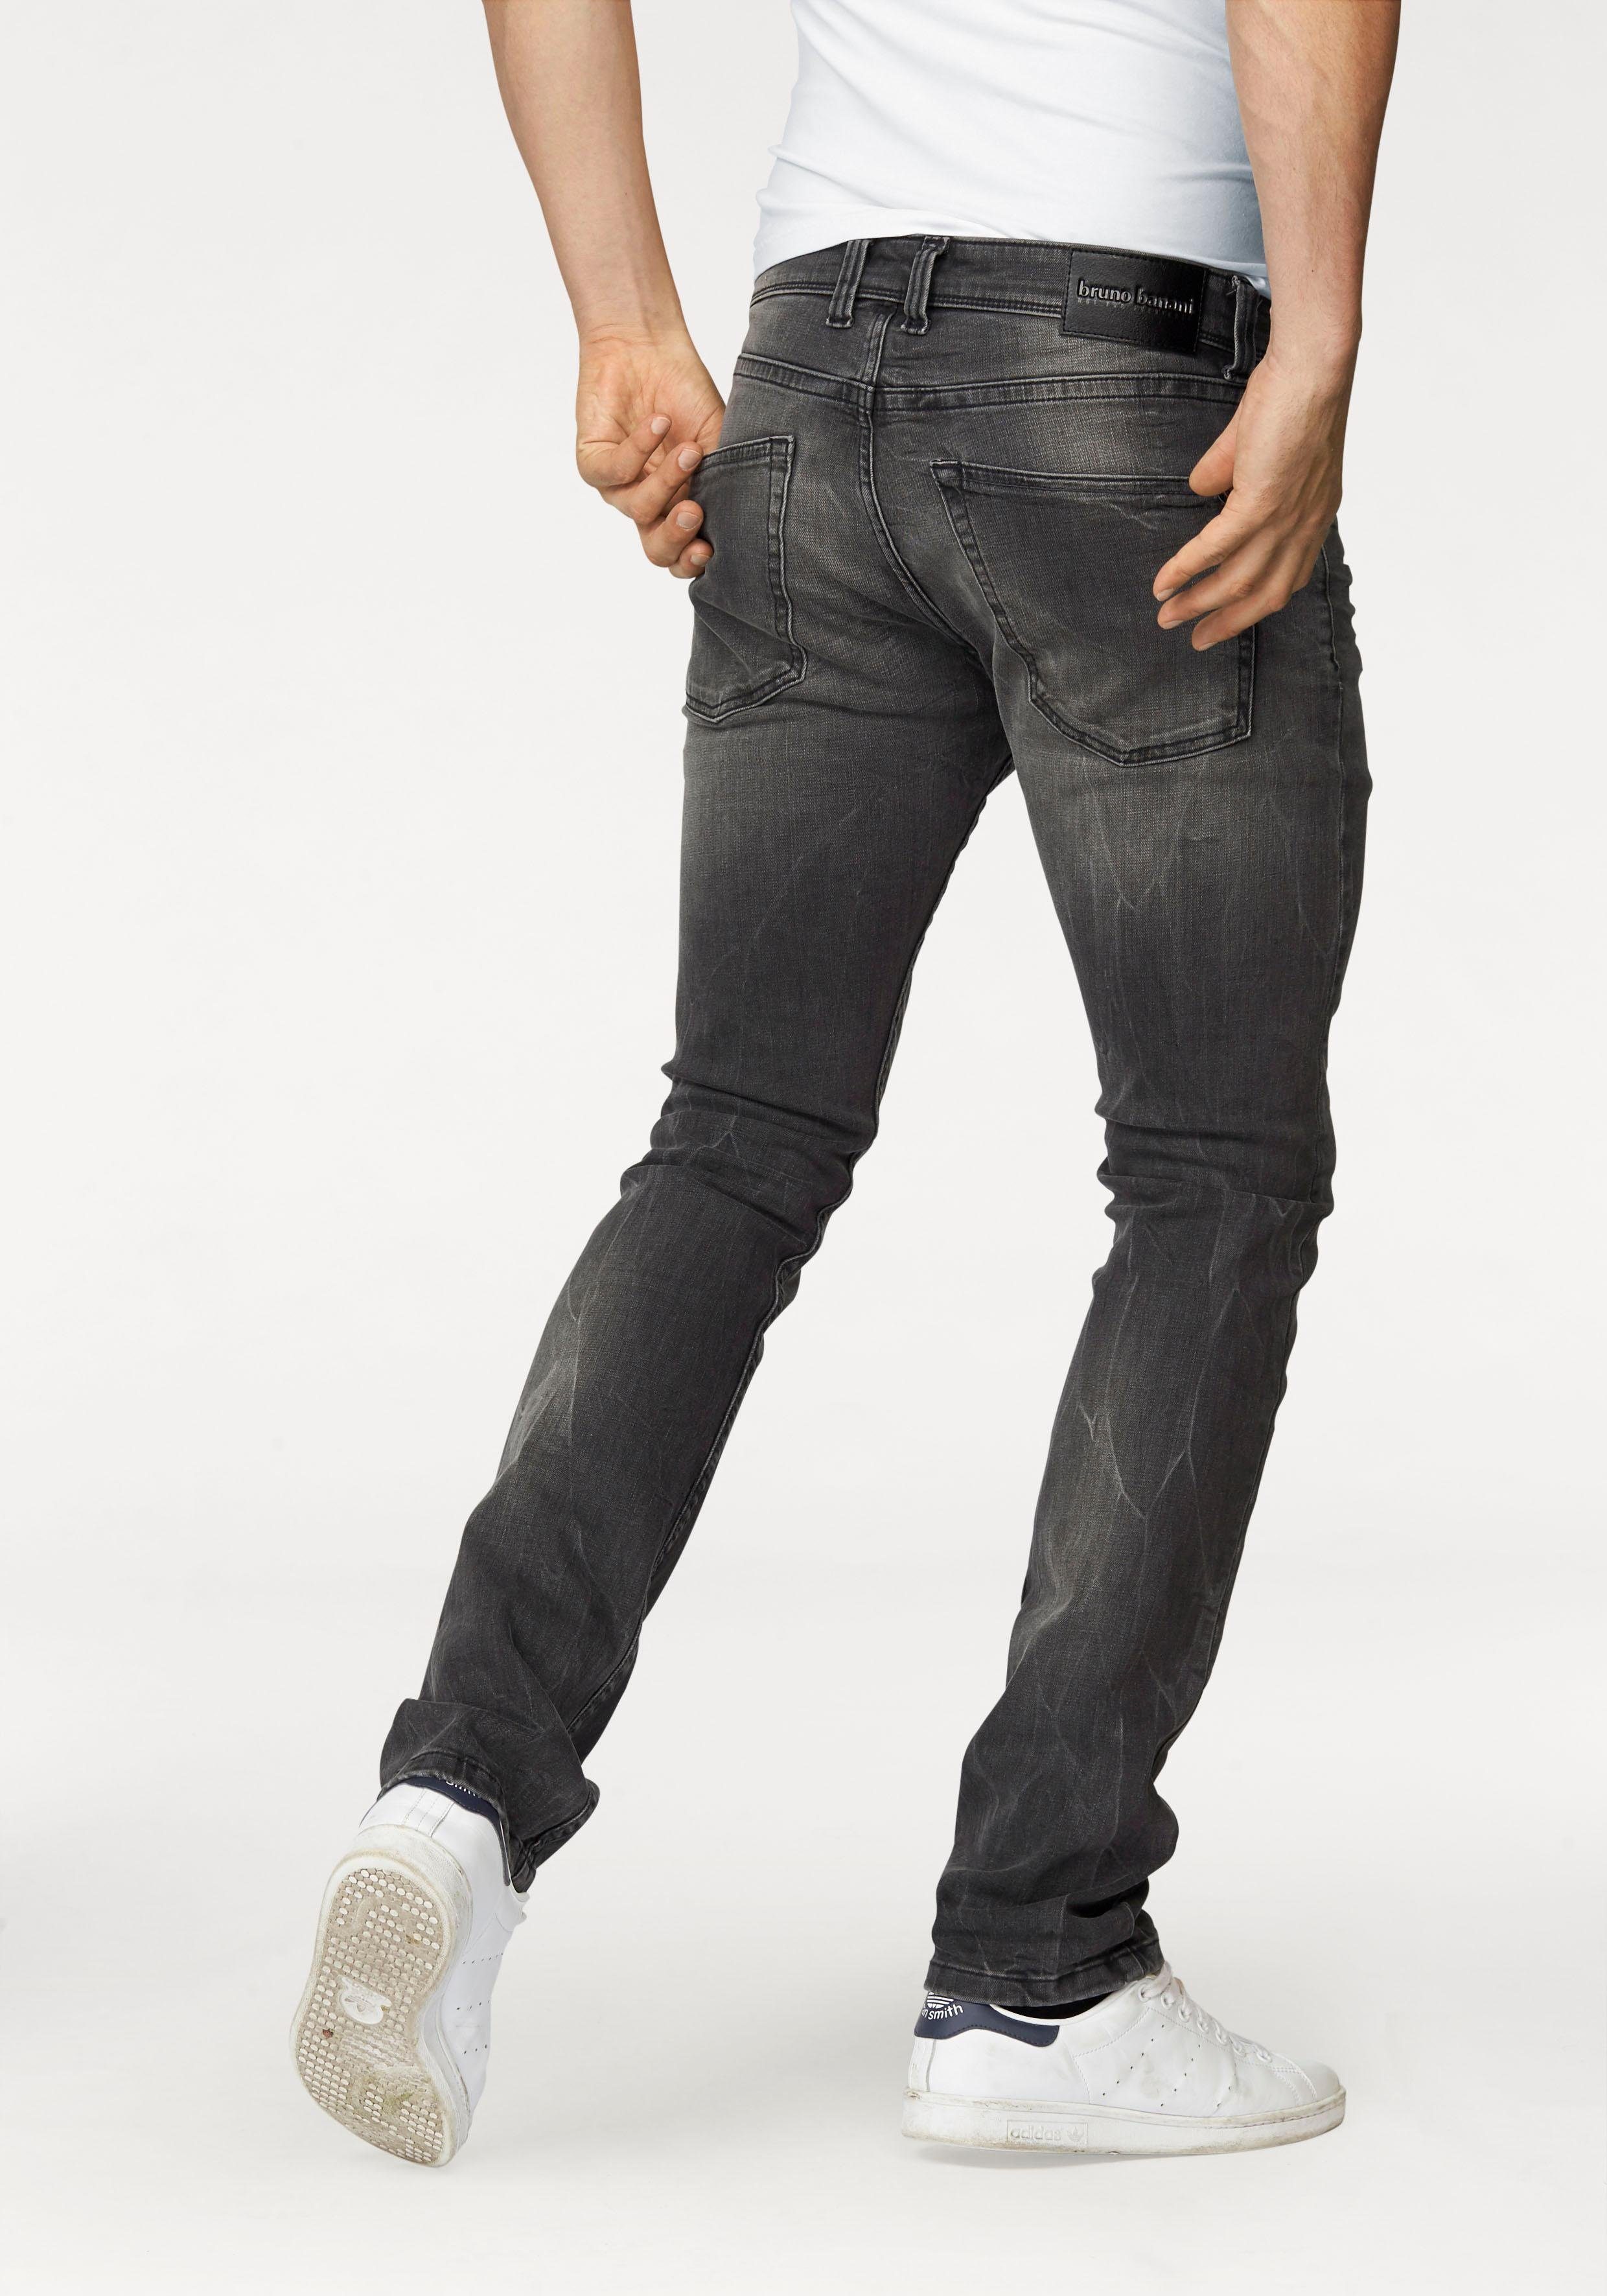 زميل طرح تطويق slim jeans herren günstig - naomiblacktattoo.com